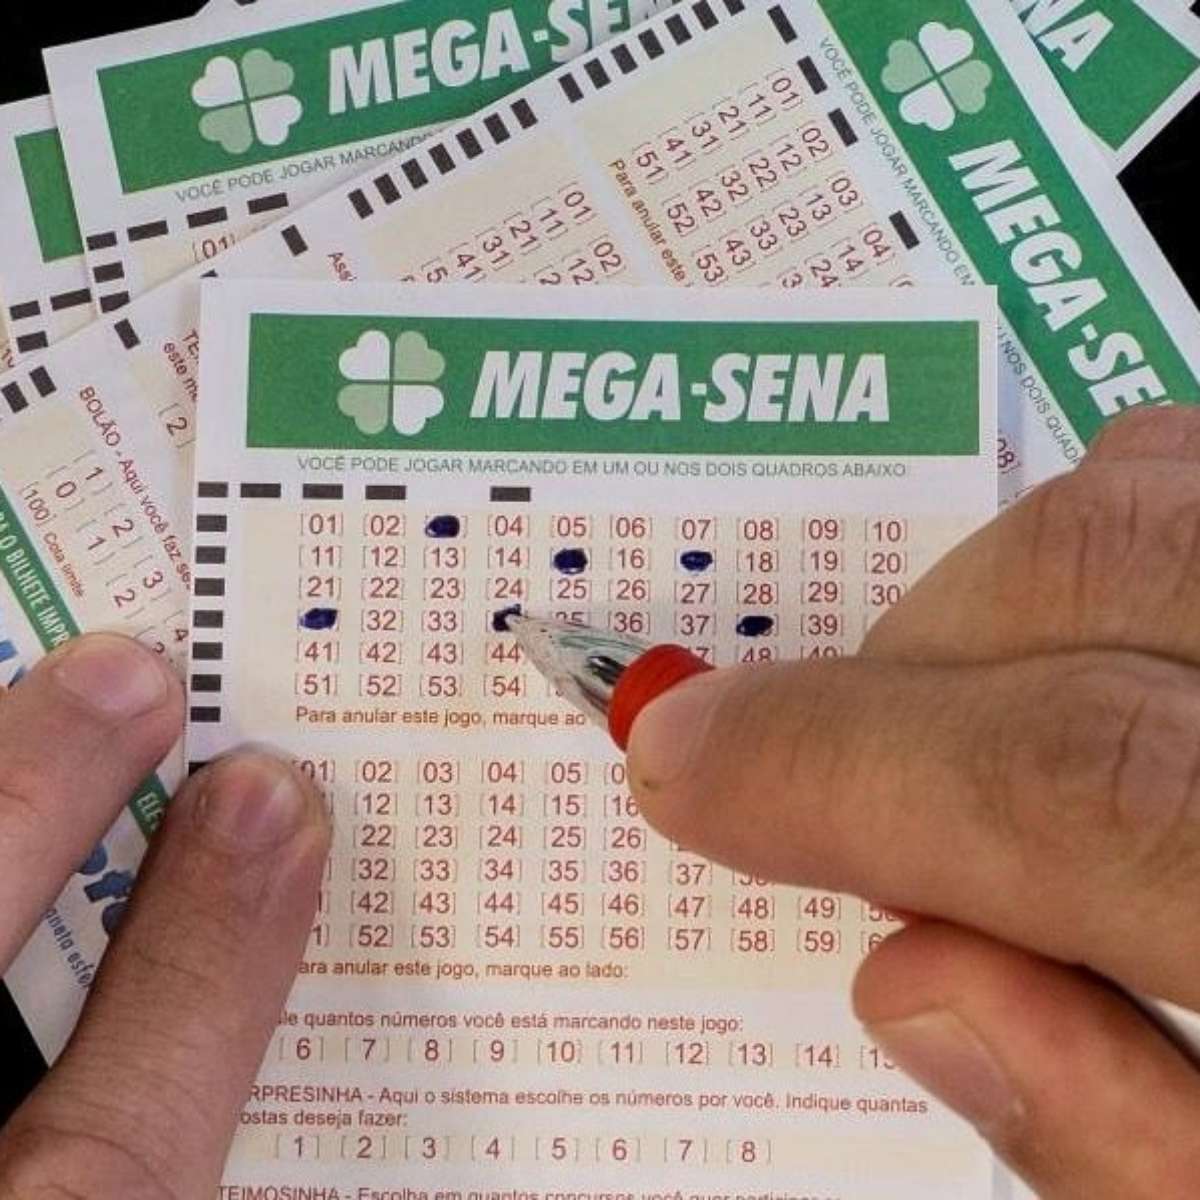 SÃO PAULO, SP - 24.10.2018: MEGA SENA ACUMULOU E PAGARÁ 20 MILHÕES - There  was no match for the 2090 mega-sena contest that was drawn yesterday (23).  The six dozen drawn were